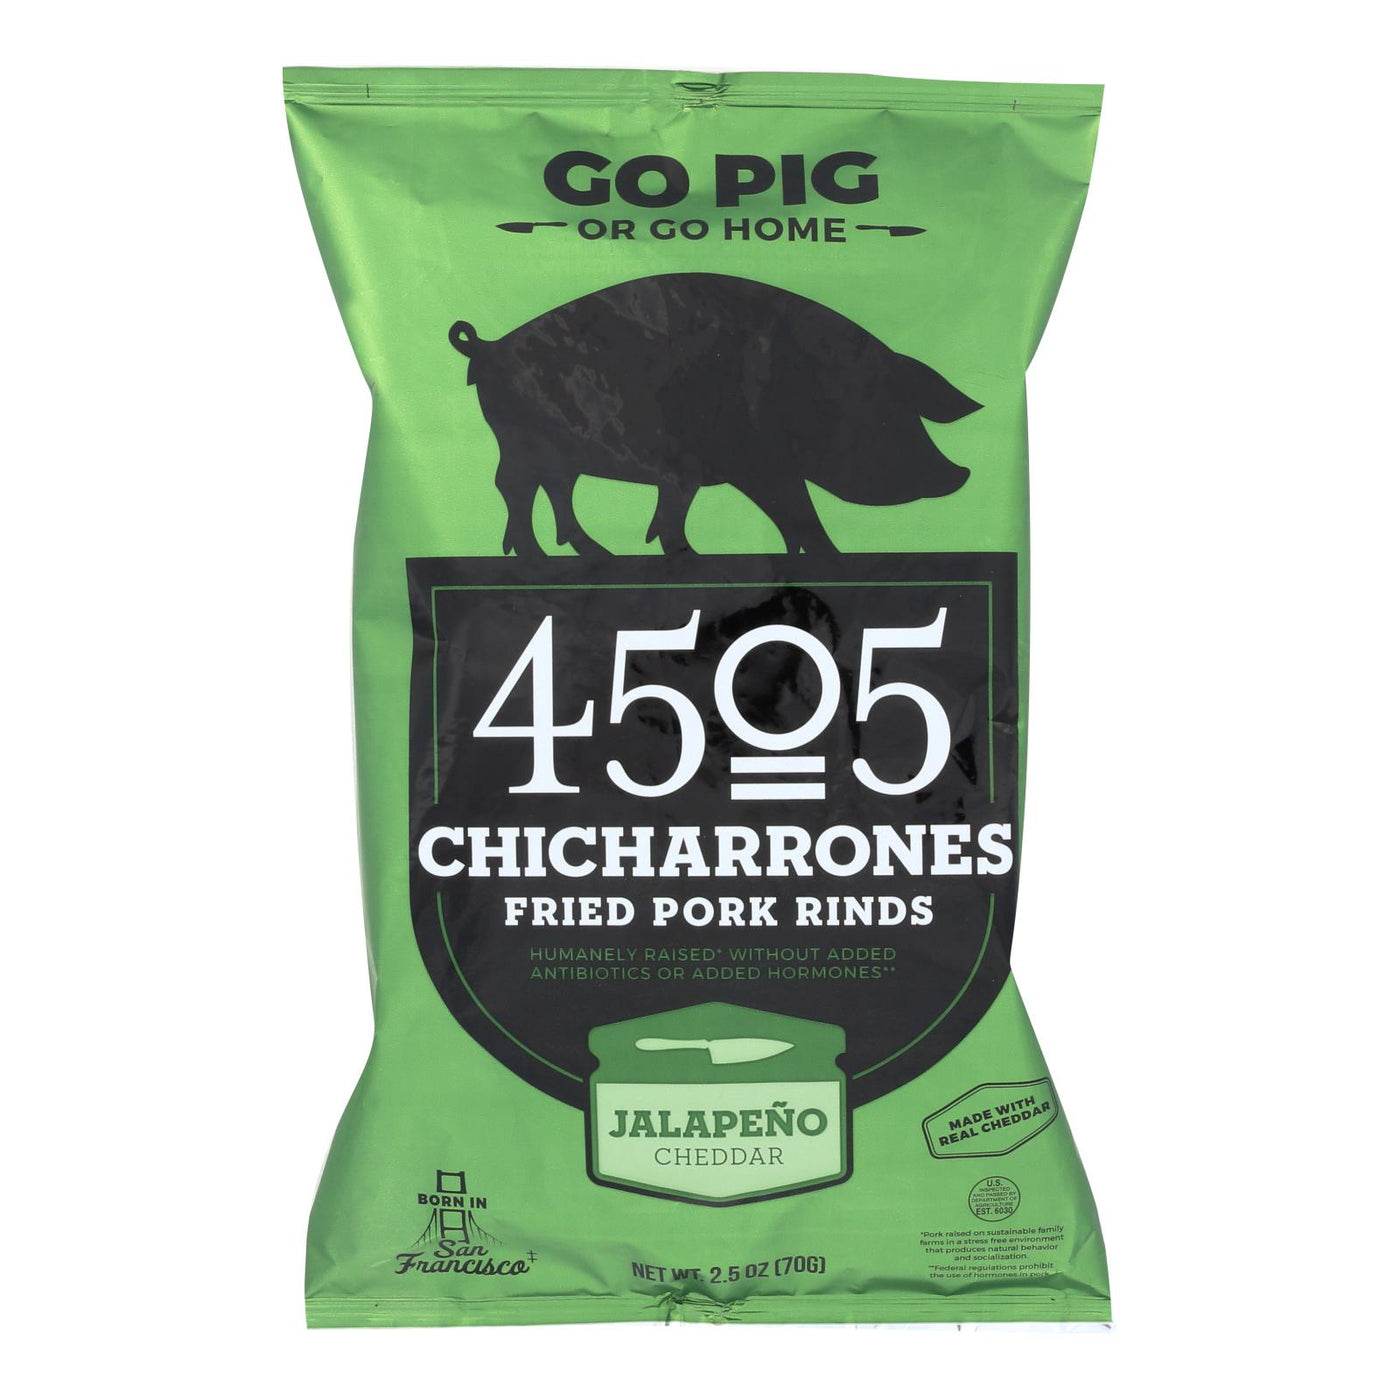 4505 - Pork Rinds - Chicharones - Jalapeno Cheddar - Case Of 12 - 2.5 Oz - OnlyNaturals